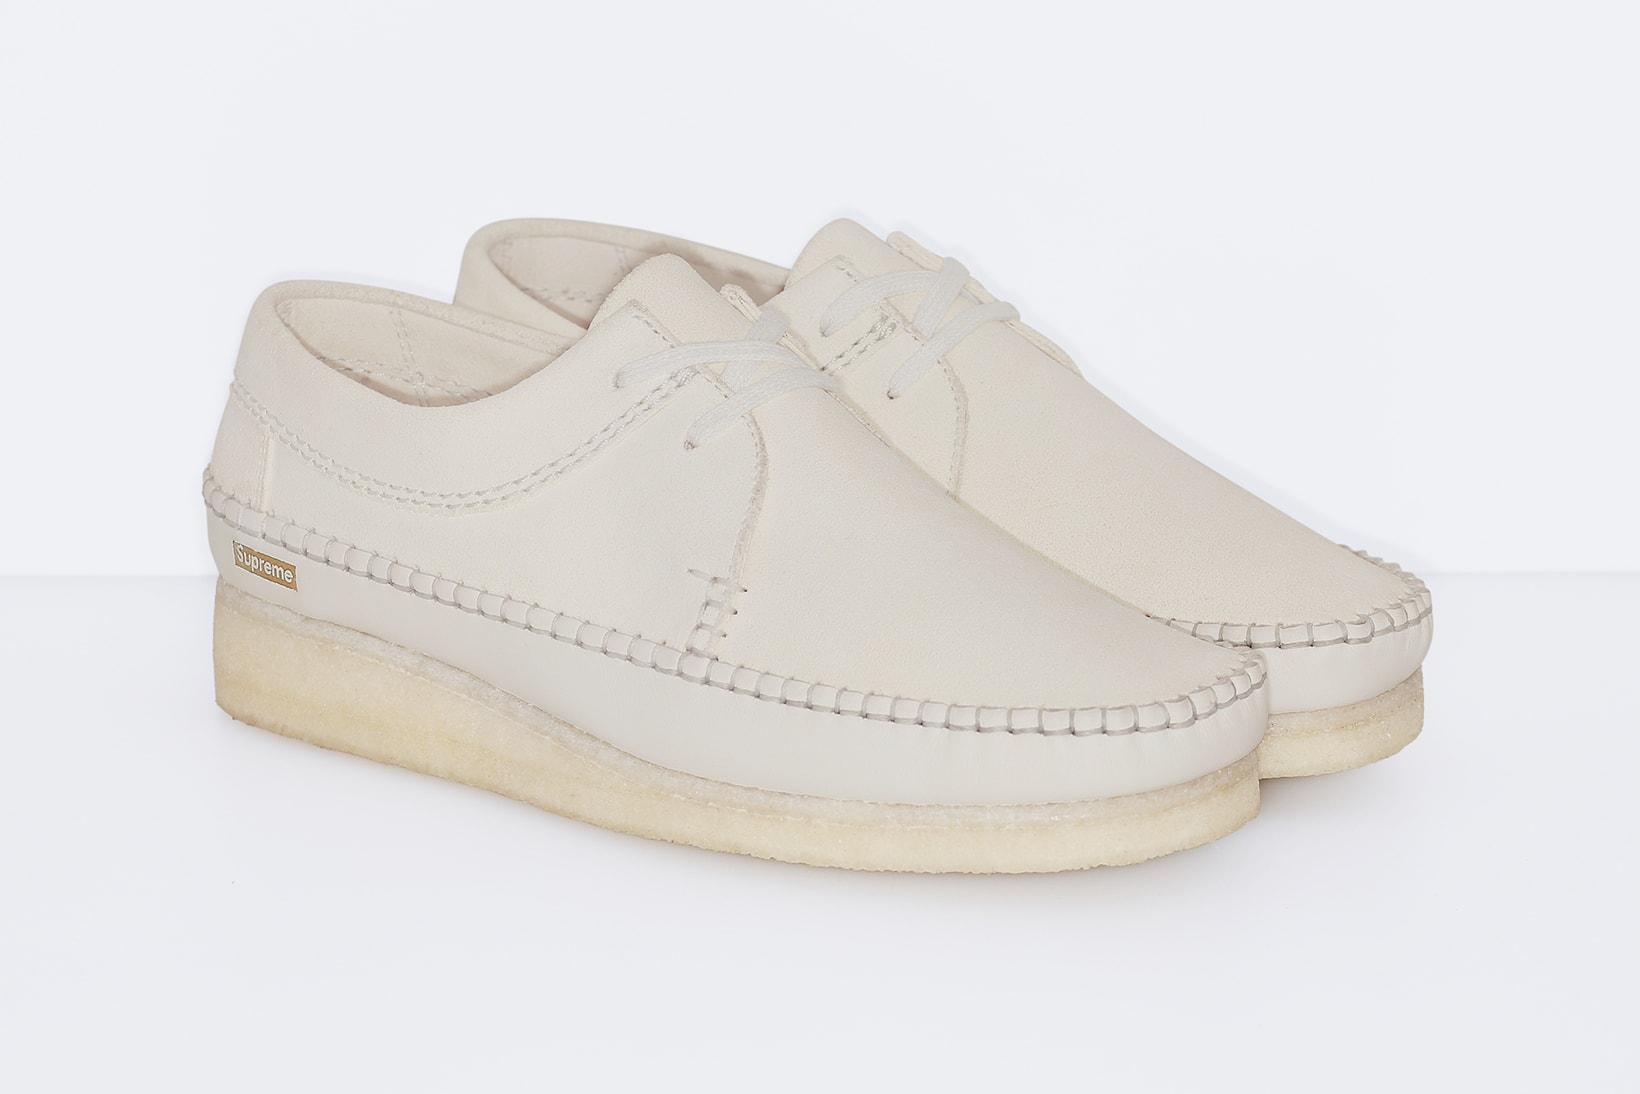 Supreme x Clarks Originals Weaver Shoe Collaboration Off White